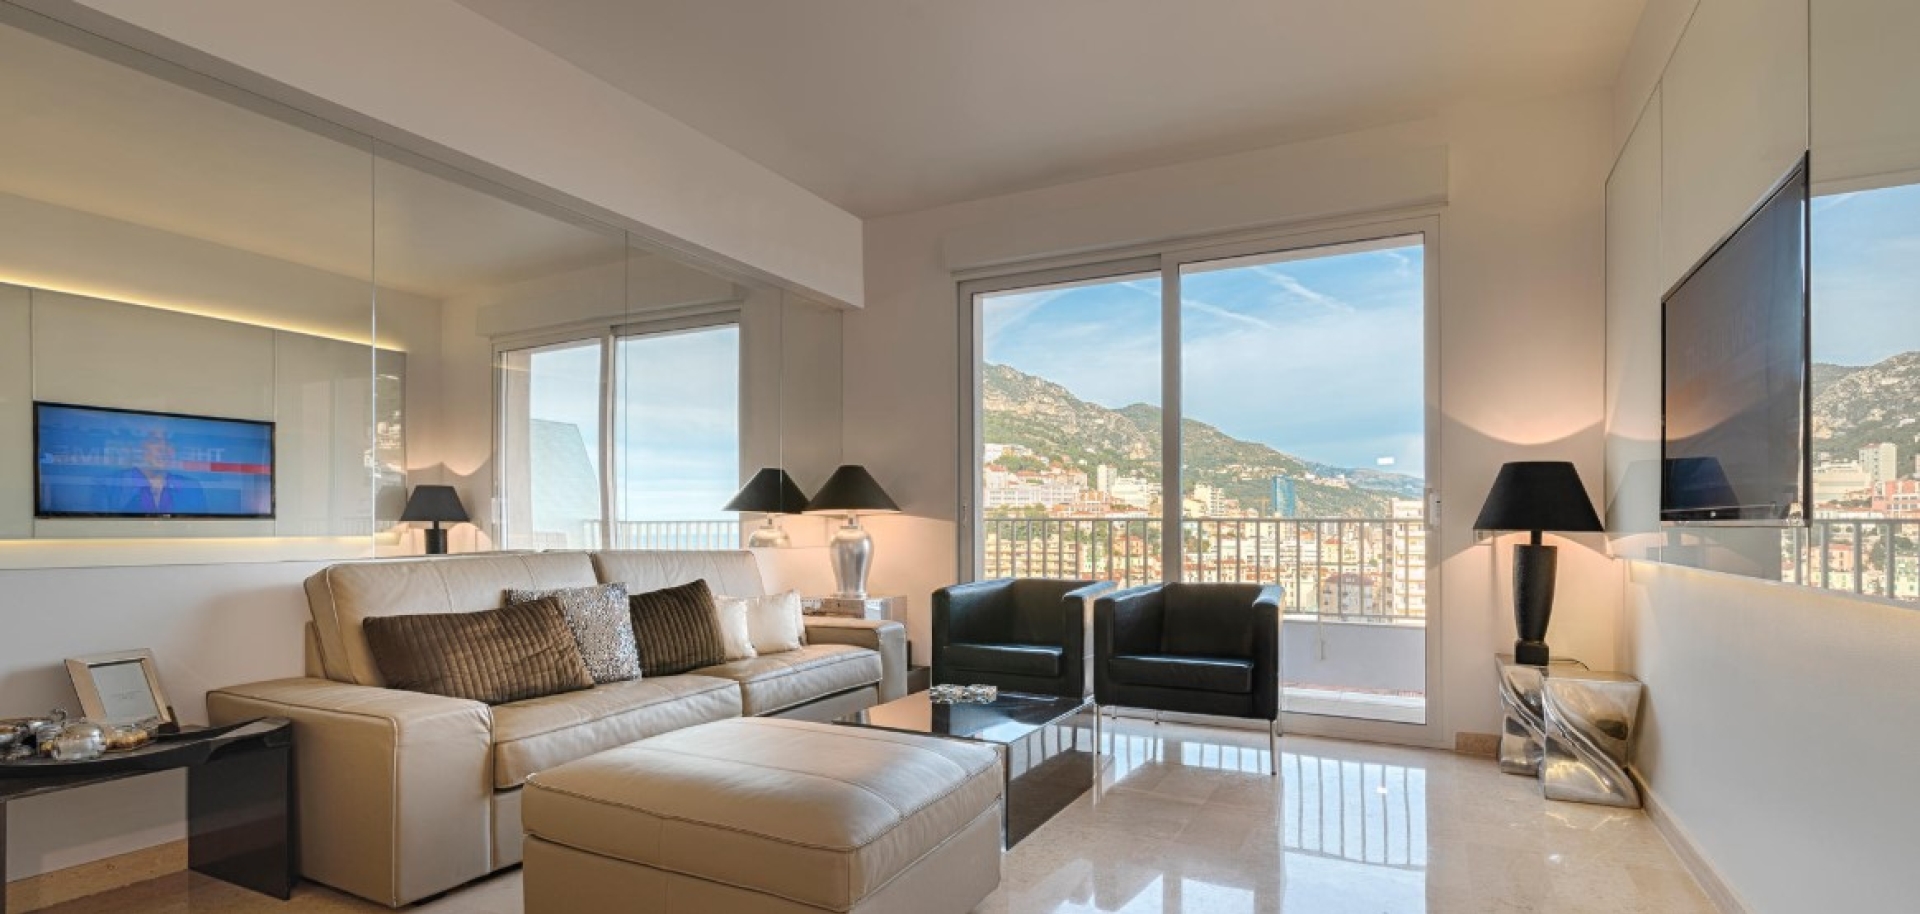 Dotta Appartement de 4 pieces a vendre - GEMEAUX - Jardin Exotique - Monaco - imgimage4